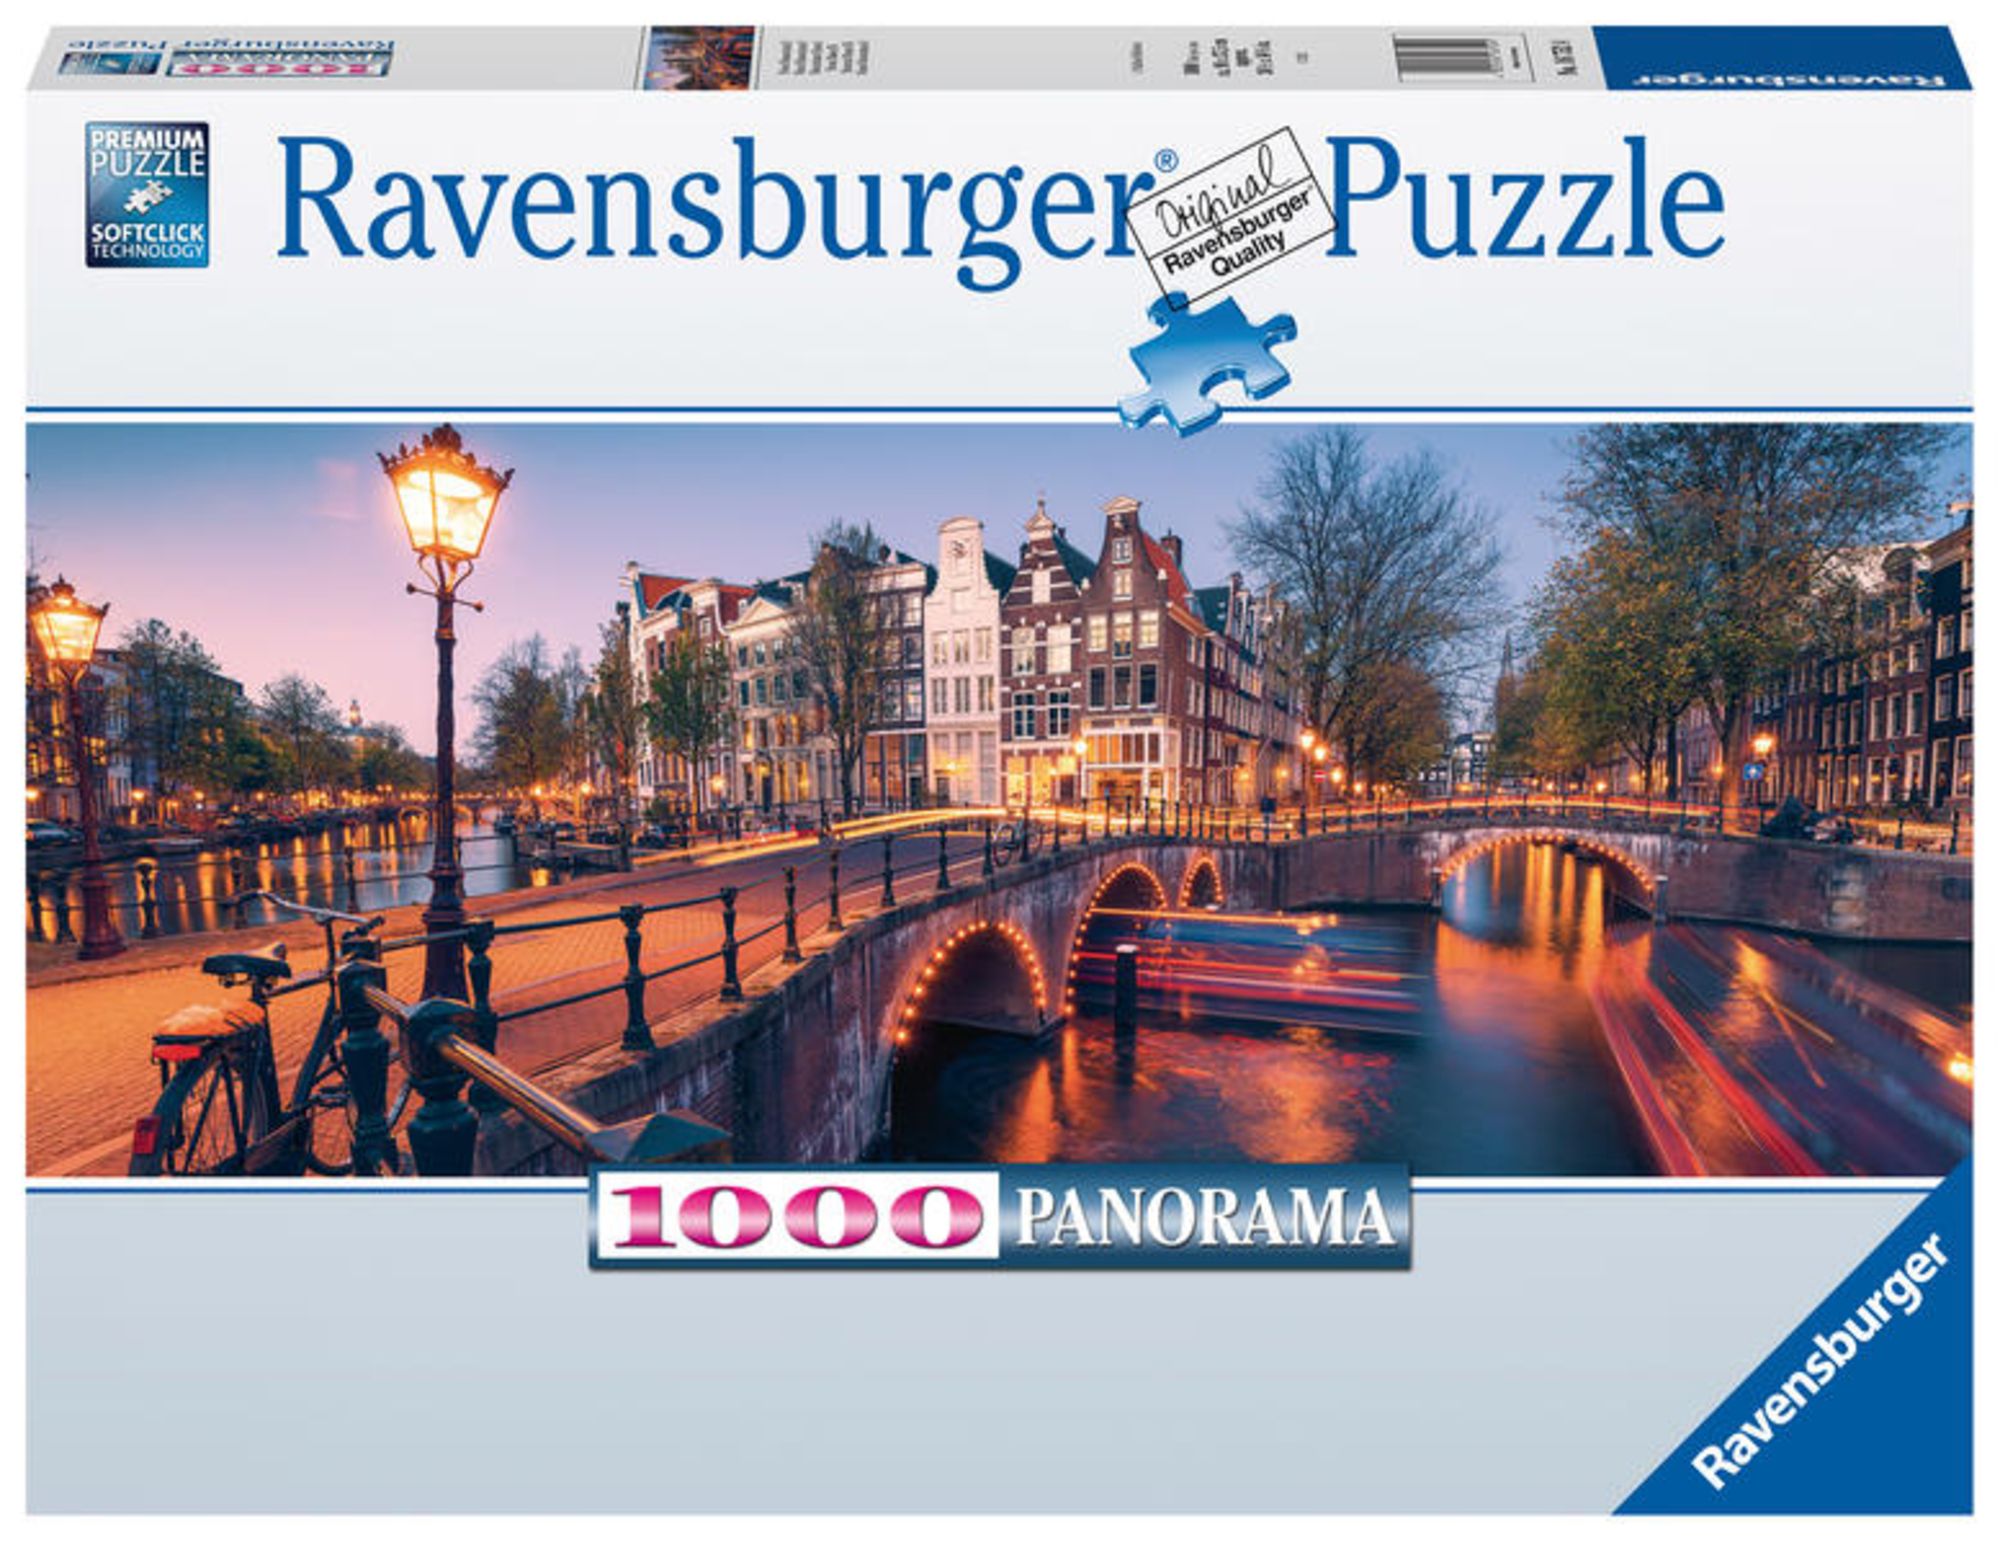 Puzzle Ravensburger Magischer Hirsch 1000 Teile' kaufen - Spielwaren